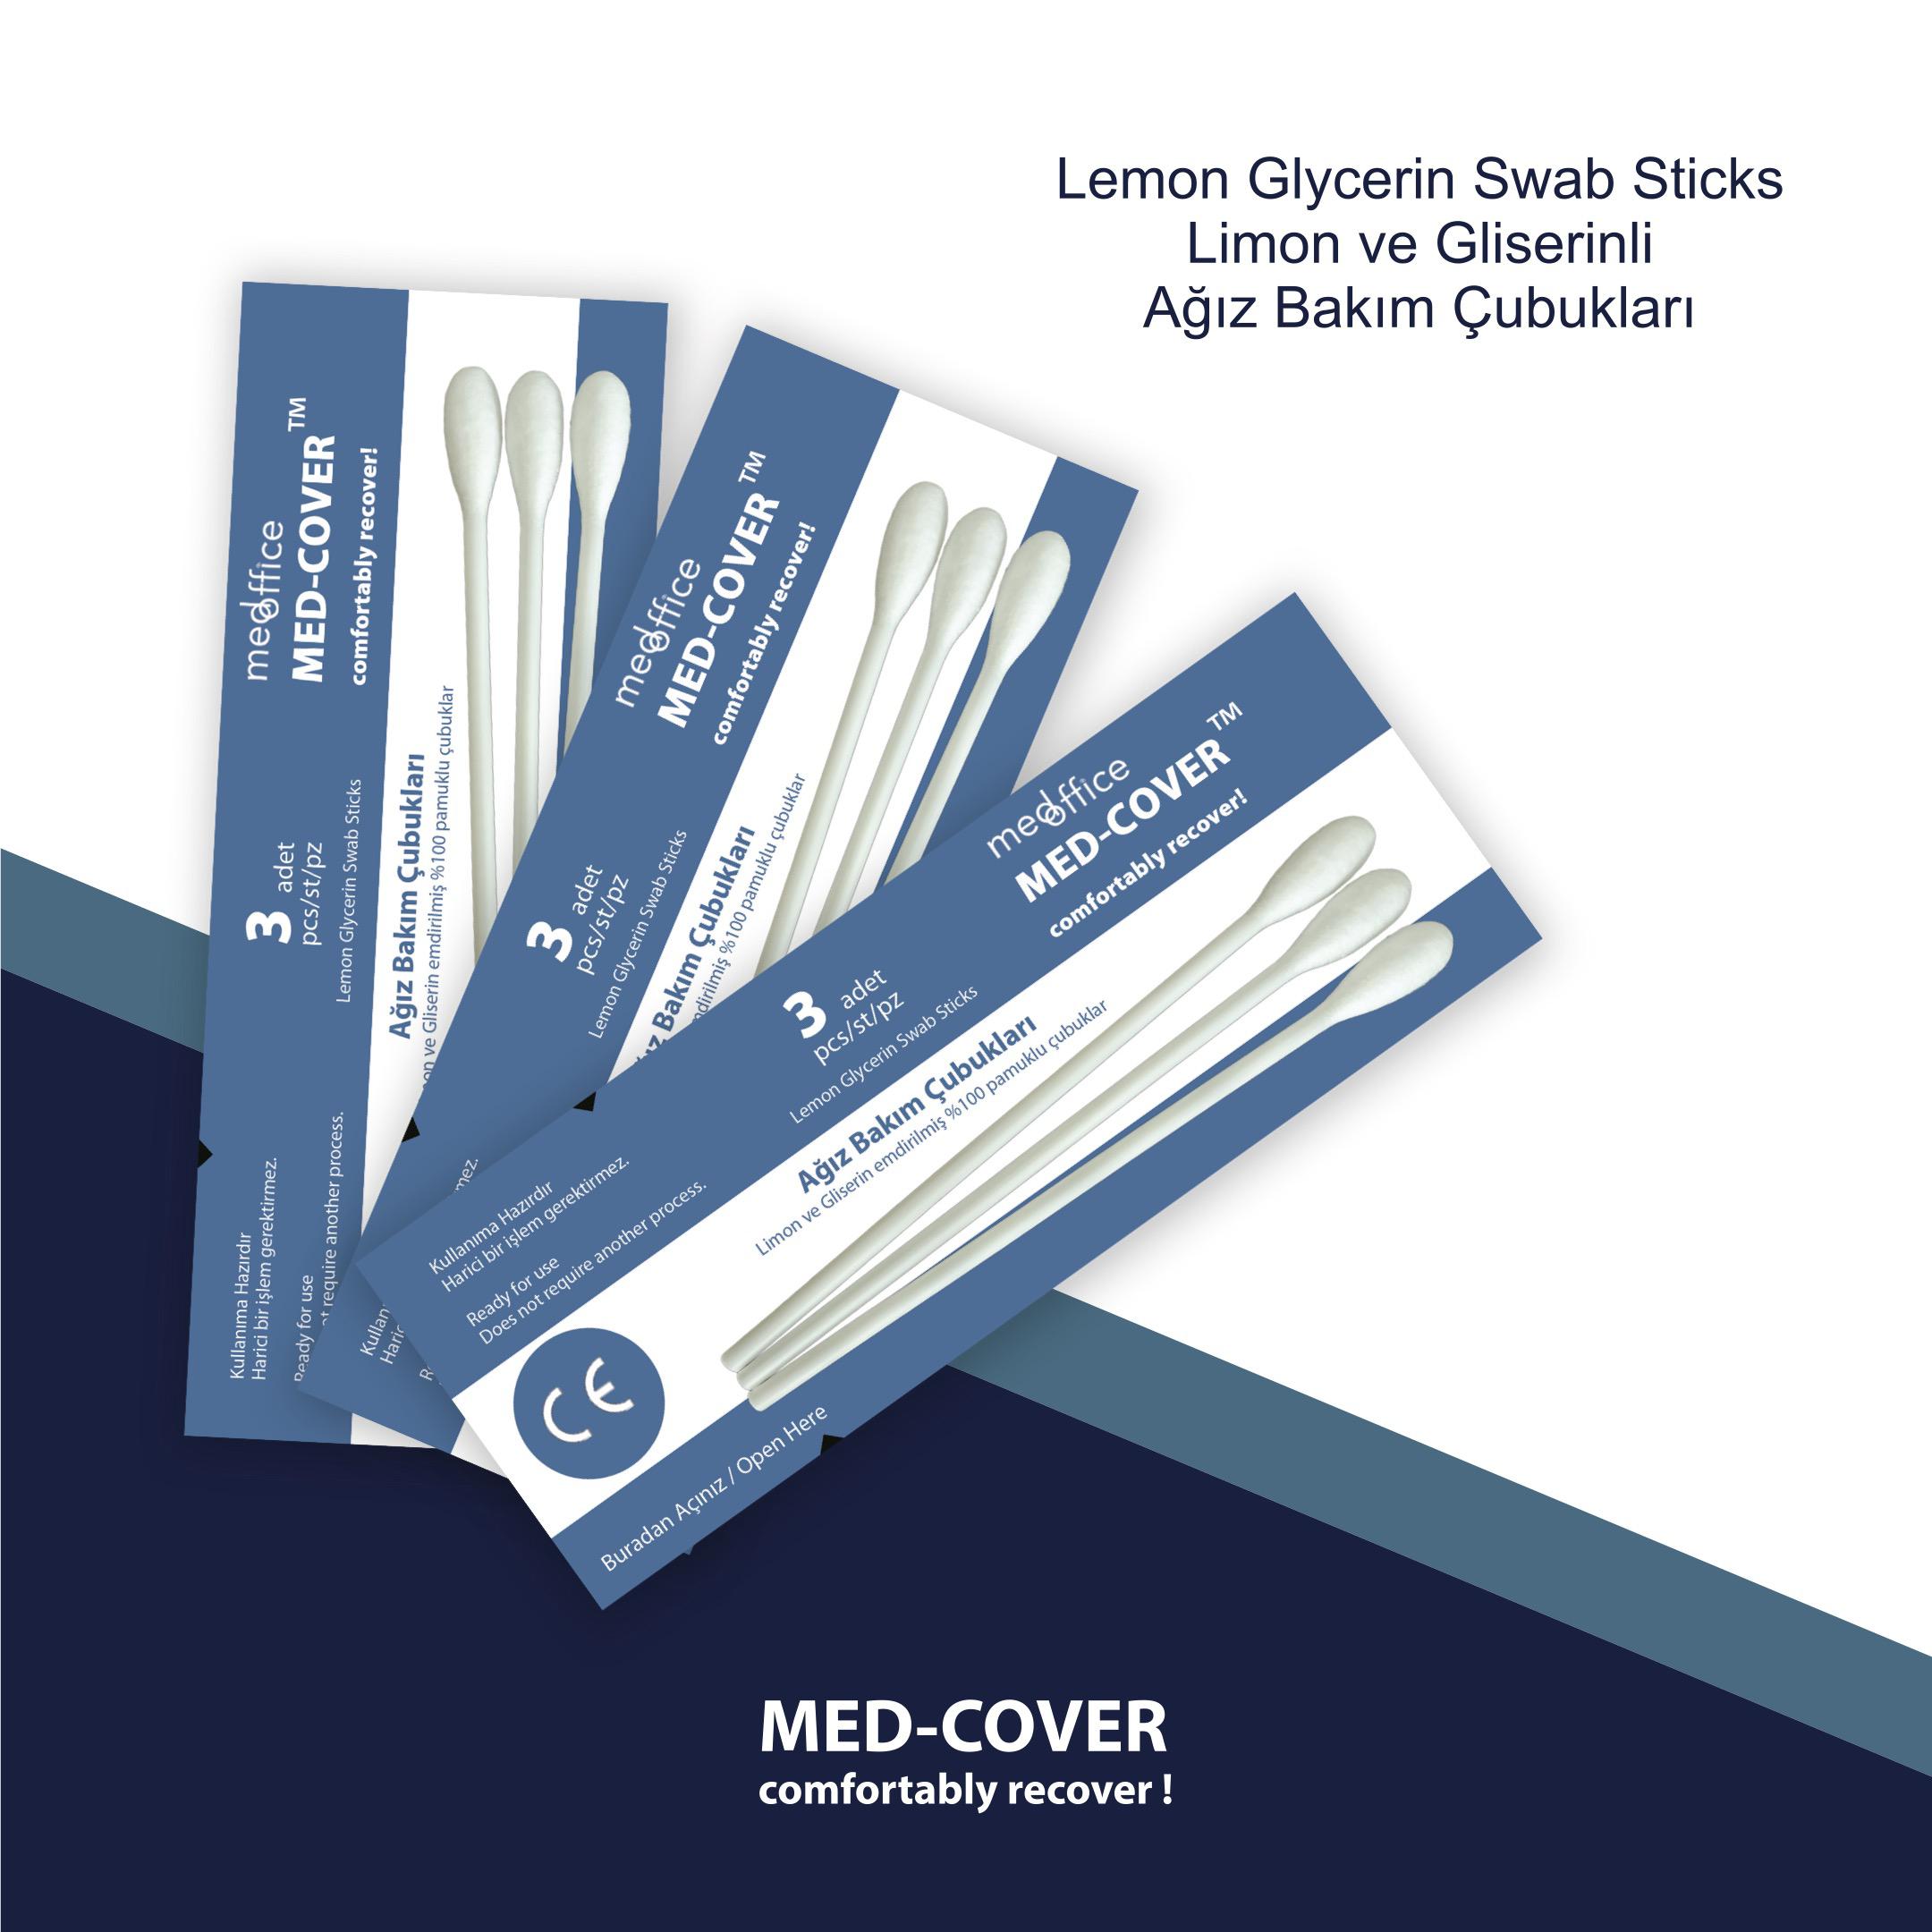 MED-COVER Lemon Glycerin Swab Sticks